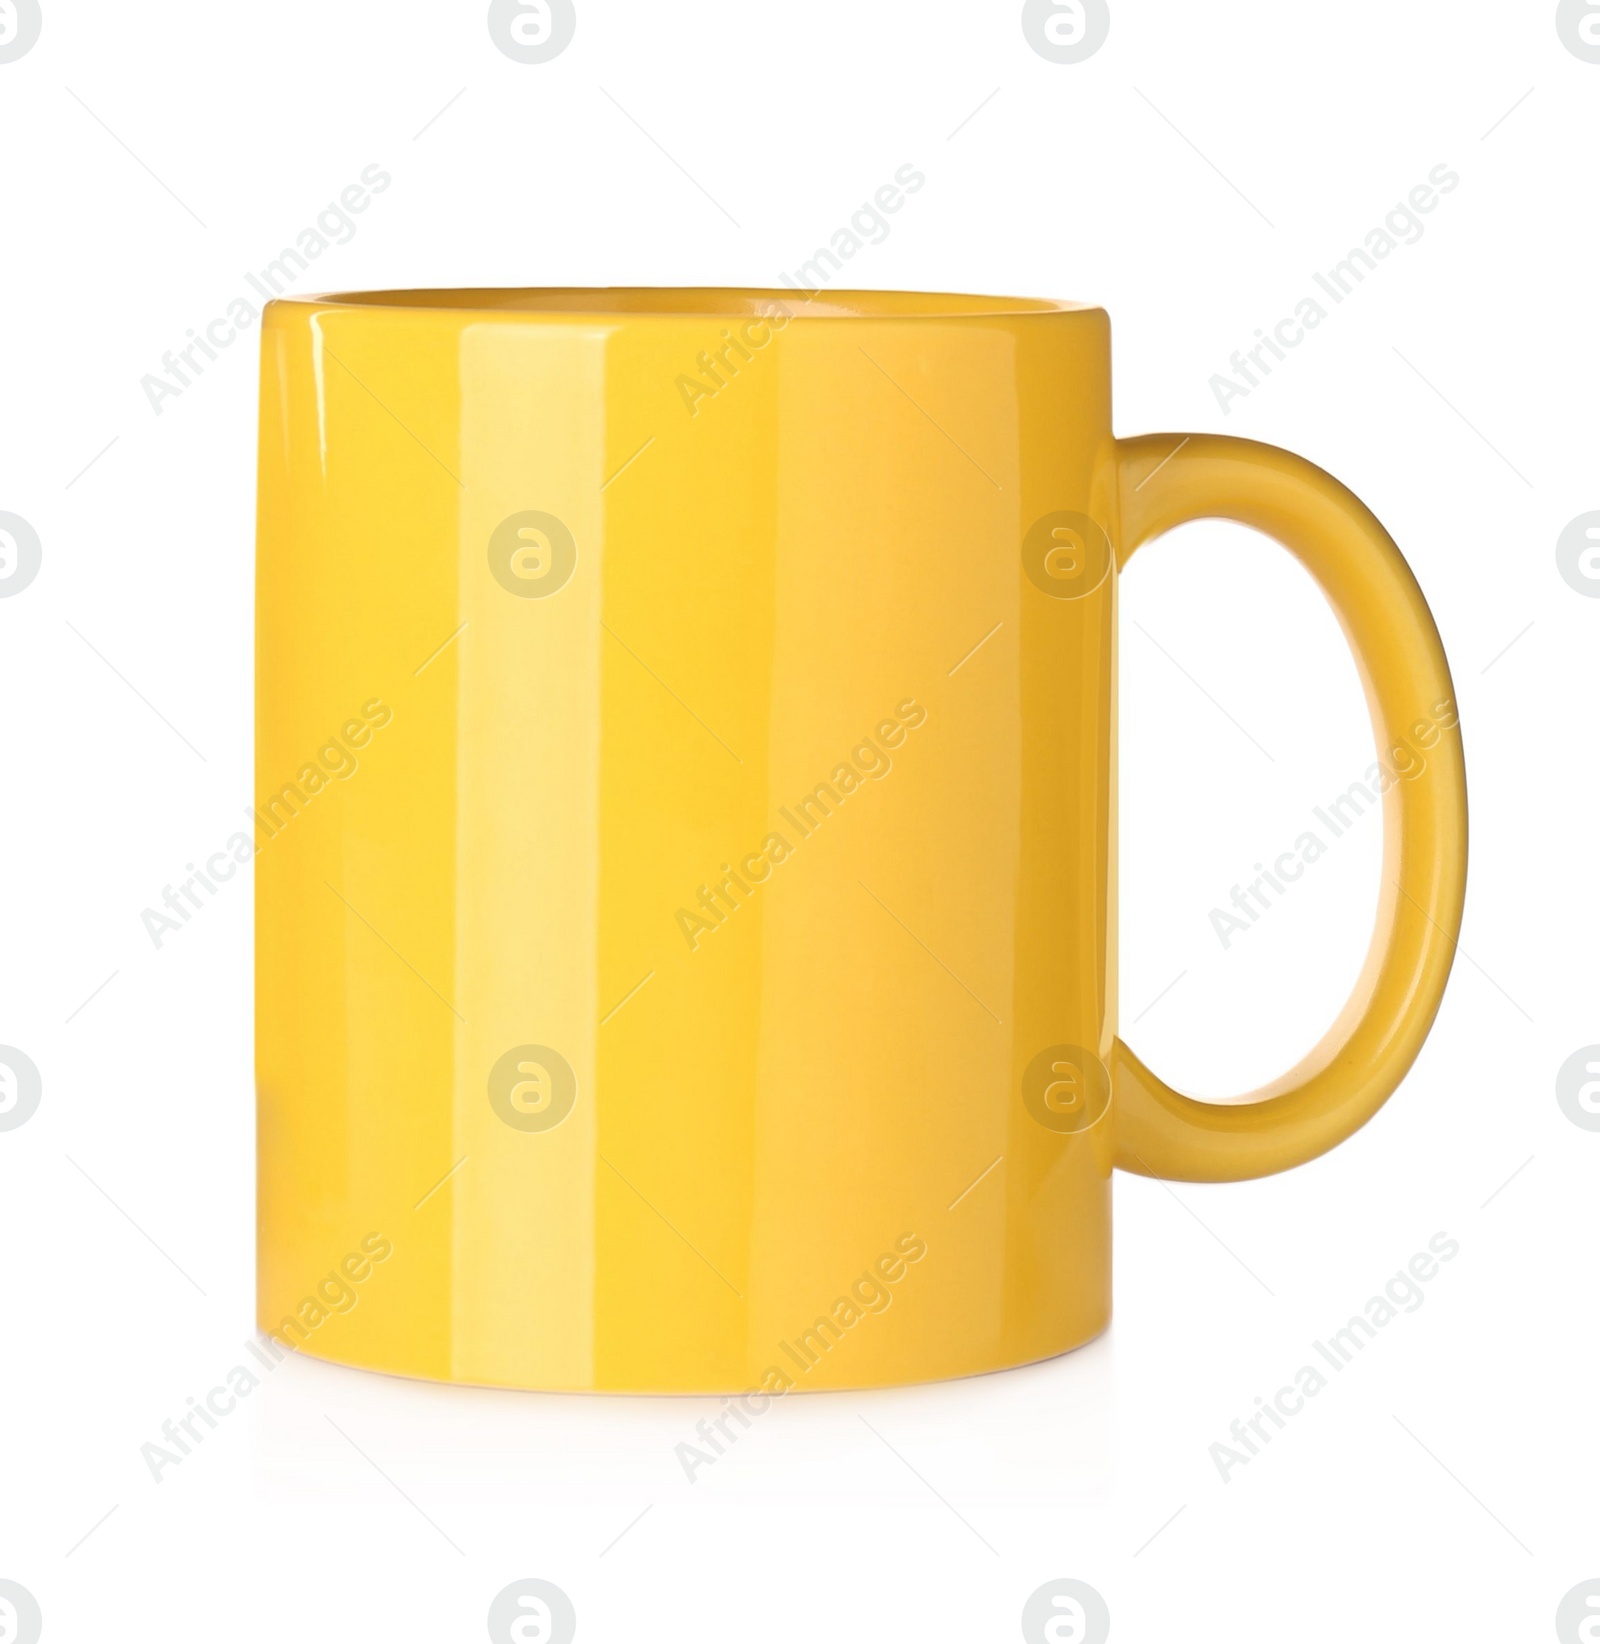 Photo of Blank yellow ceramic mug isolated on white